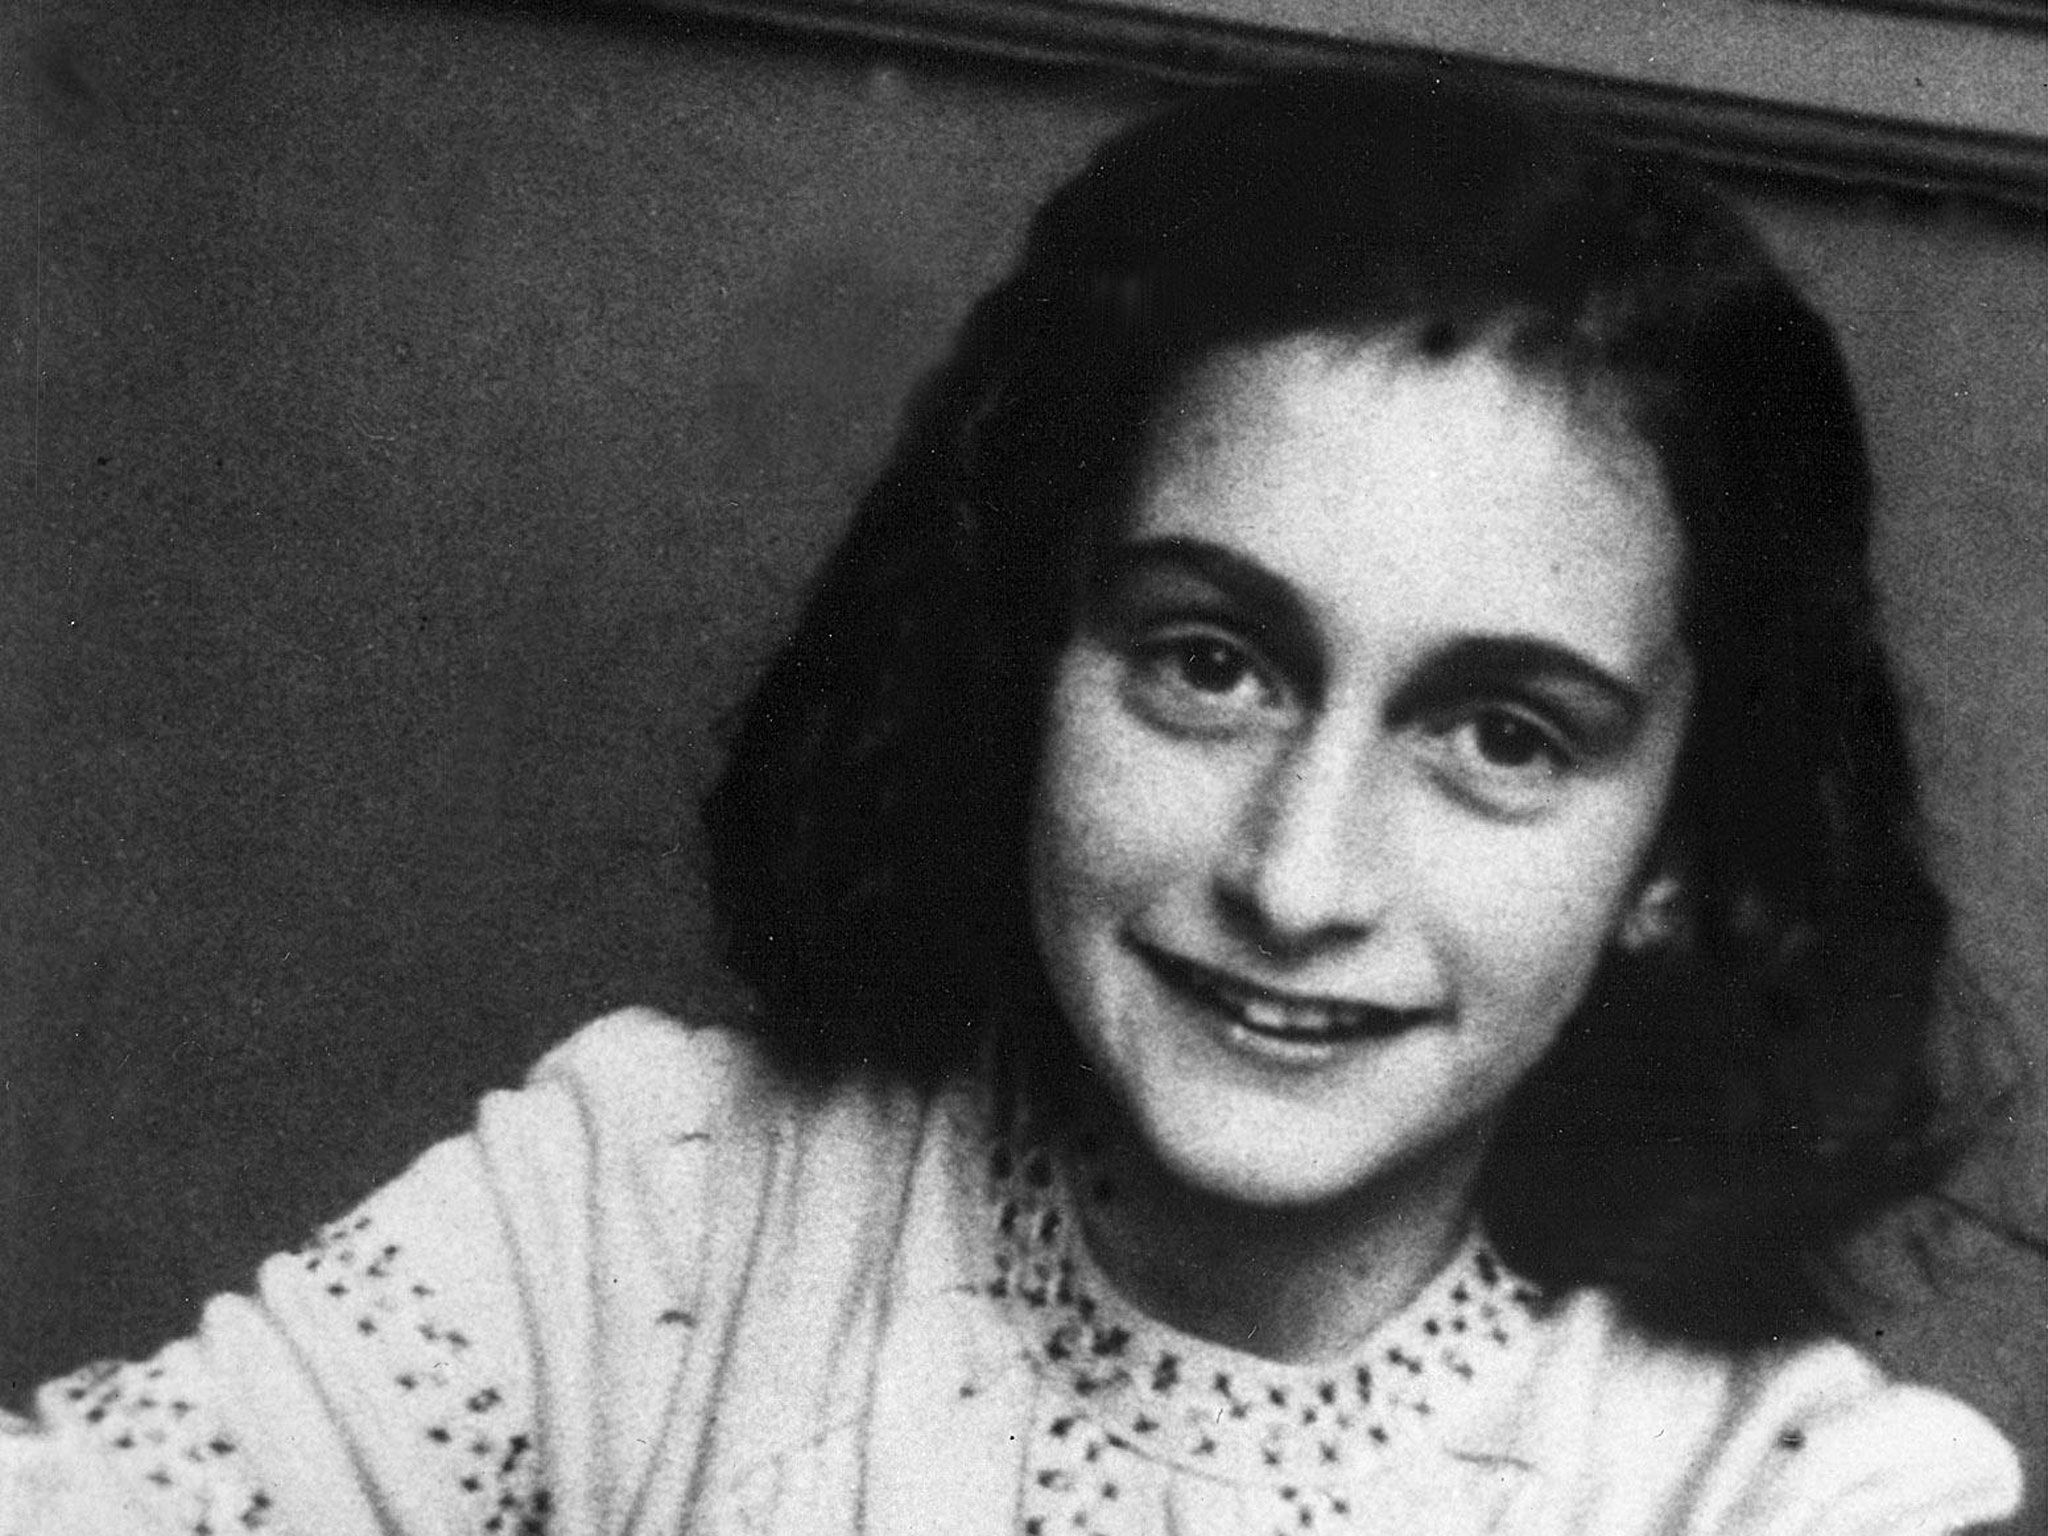 Le più belle frasi tratte dal Diario di Anna Frank